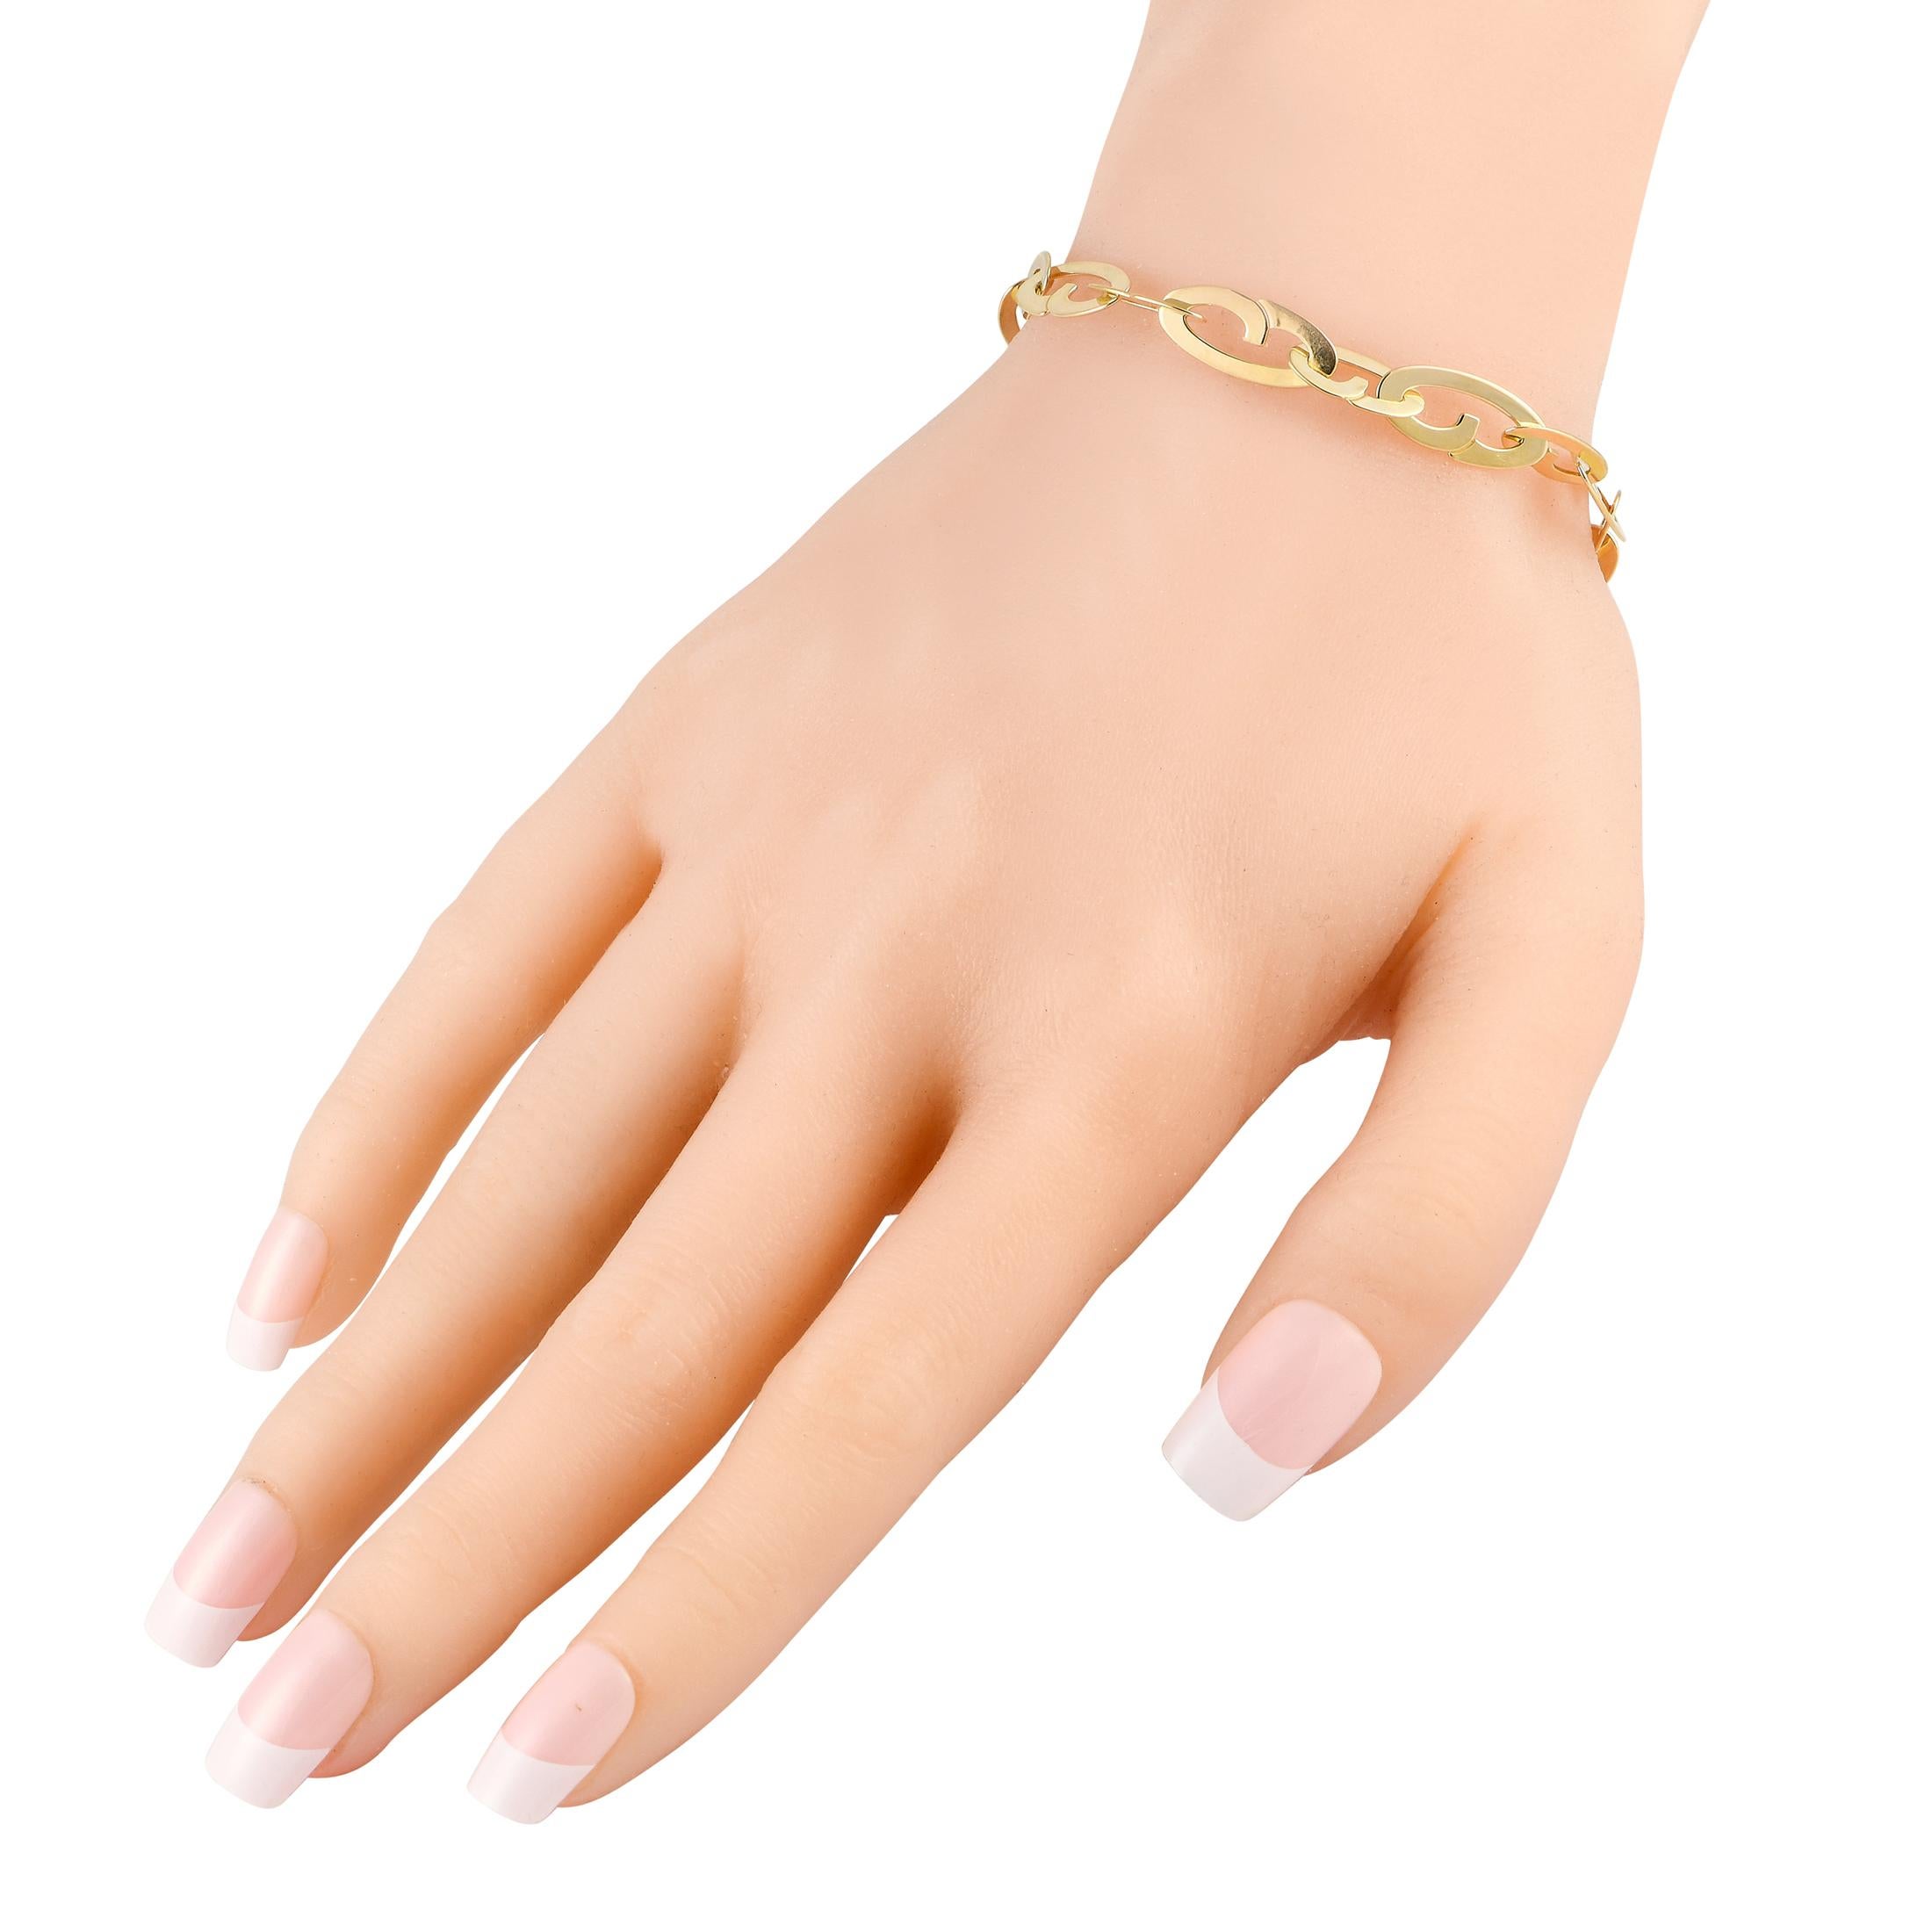 Si le bling-bling n'est pas votre truc, cette création de Roberto Coin est faite pour vous. Le bracelet se compose d'une chaîne de maillons plats en or jaune 18 carats, se terminant par un fermoir à bascule orné d'un saphir. Le style discret de ce